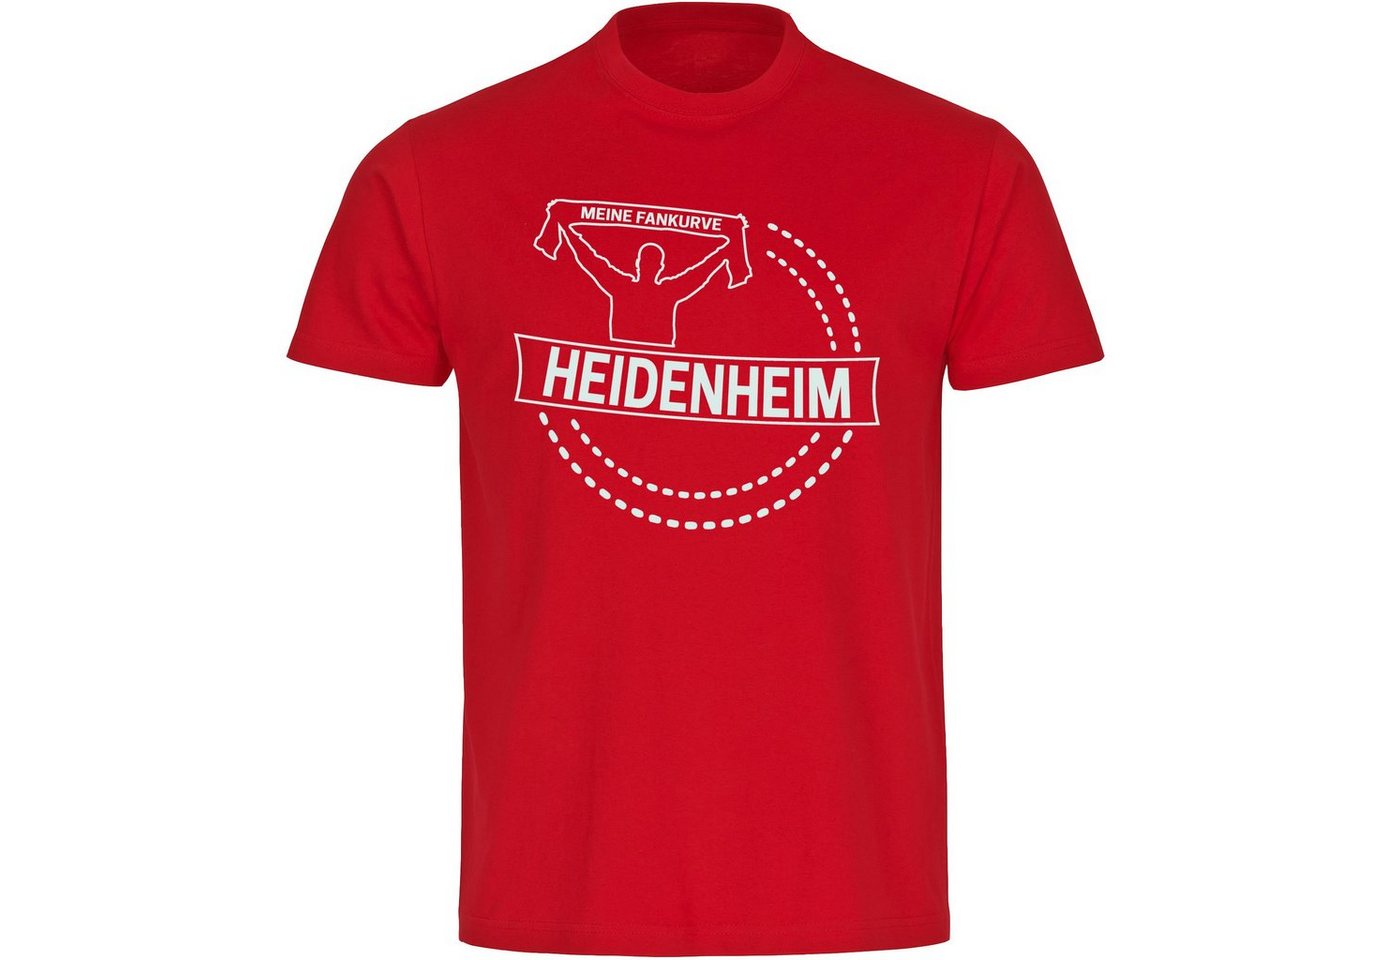 multifanshop T-Shirt Herren Heidenheim - Meine Fankurve - Männer von multifanshop